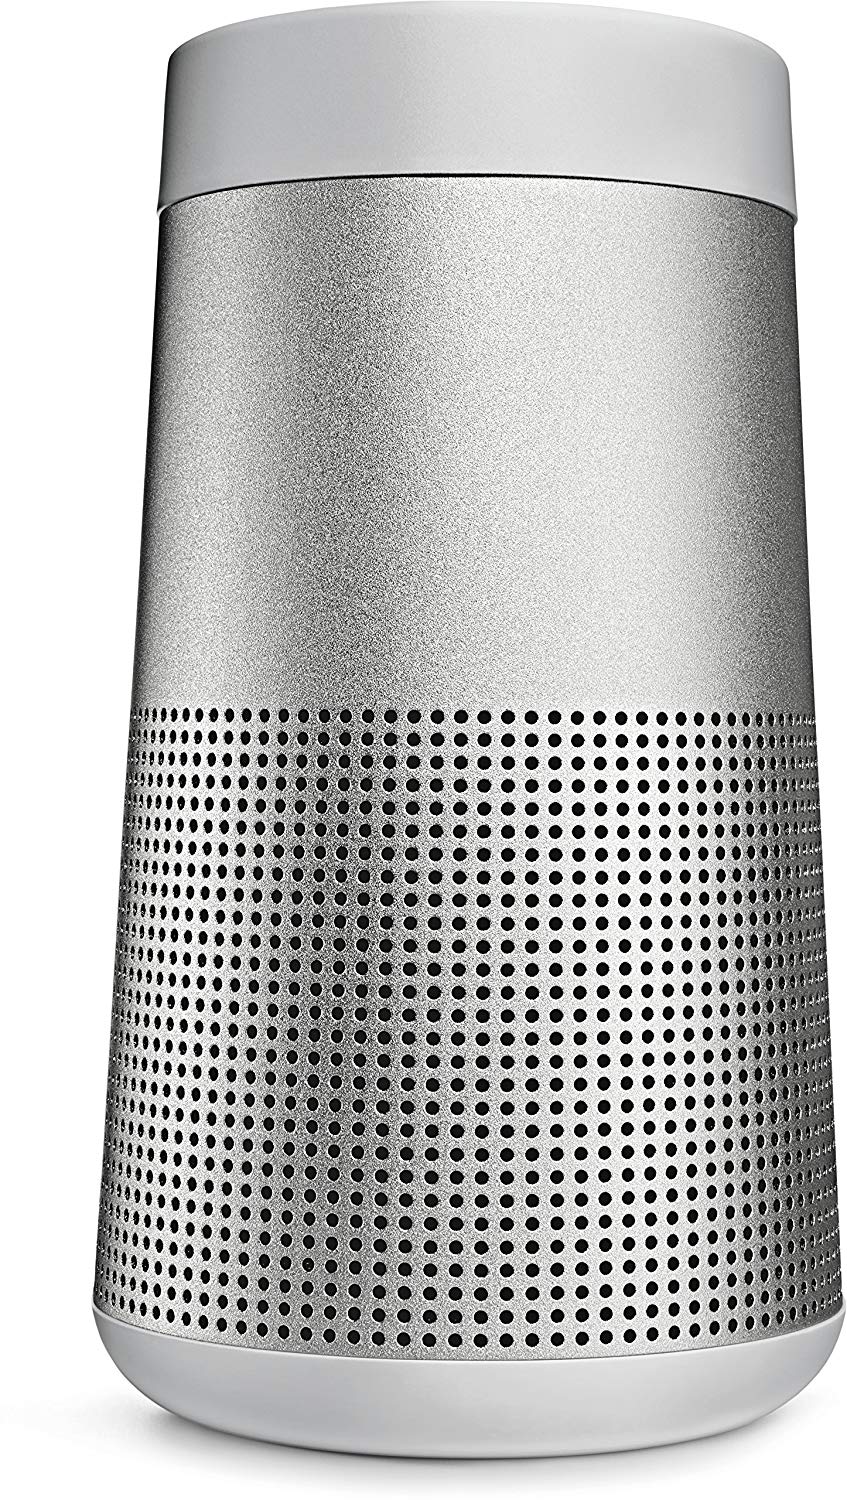 SoundLink Revolve Bluetooth speaker